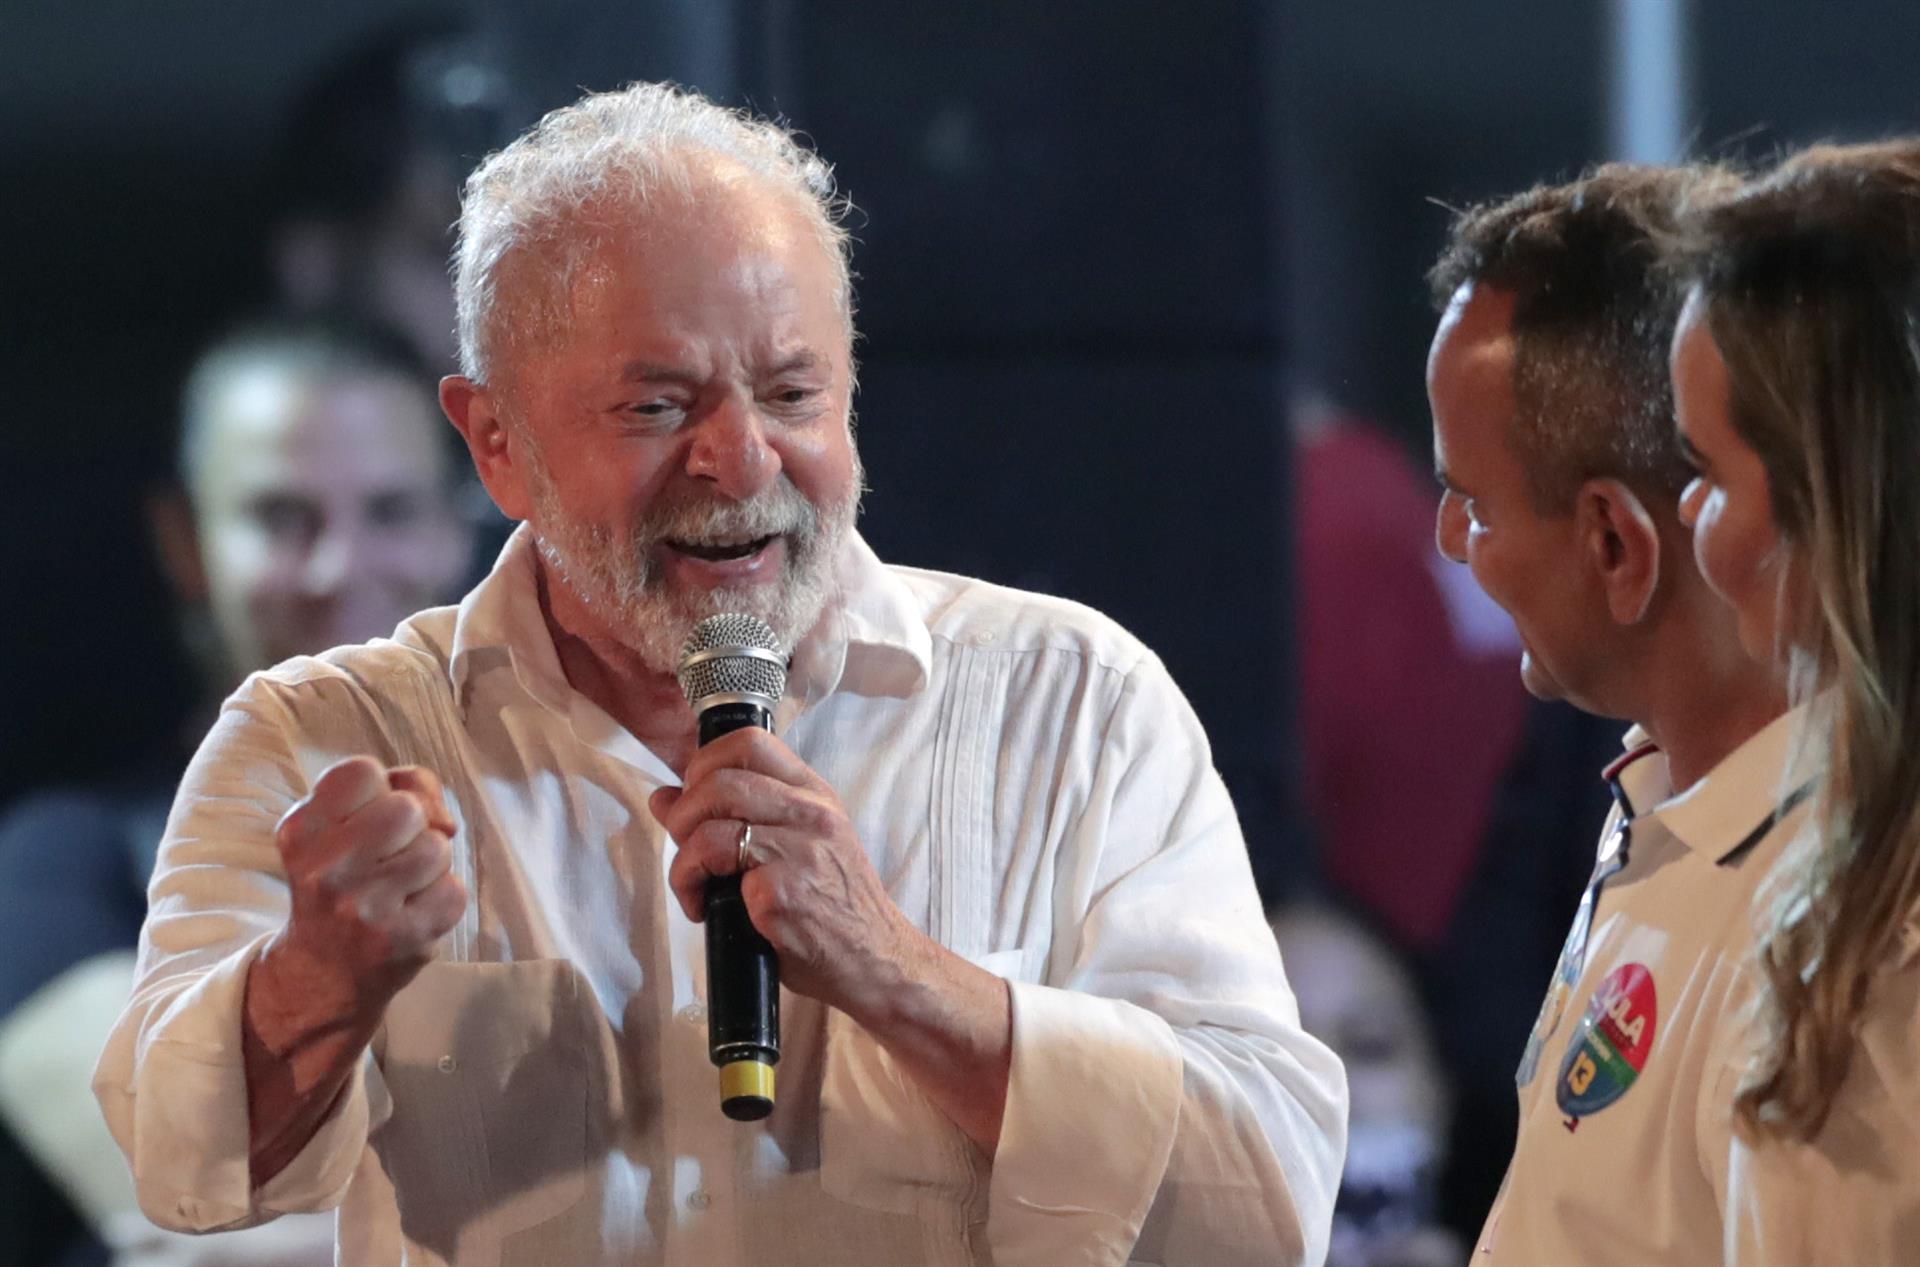 El expresidente y candidato a la presidencia de Brasil Luiz Inácio Lula da Silva por el Partido de los Trabajadores (PT), habla el 11 de octubre de 2022, en el barrio de Belford Roxo, en Río de Janeiro (Brasil). EFE/Andre Coelho